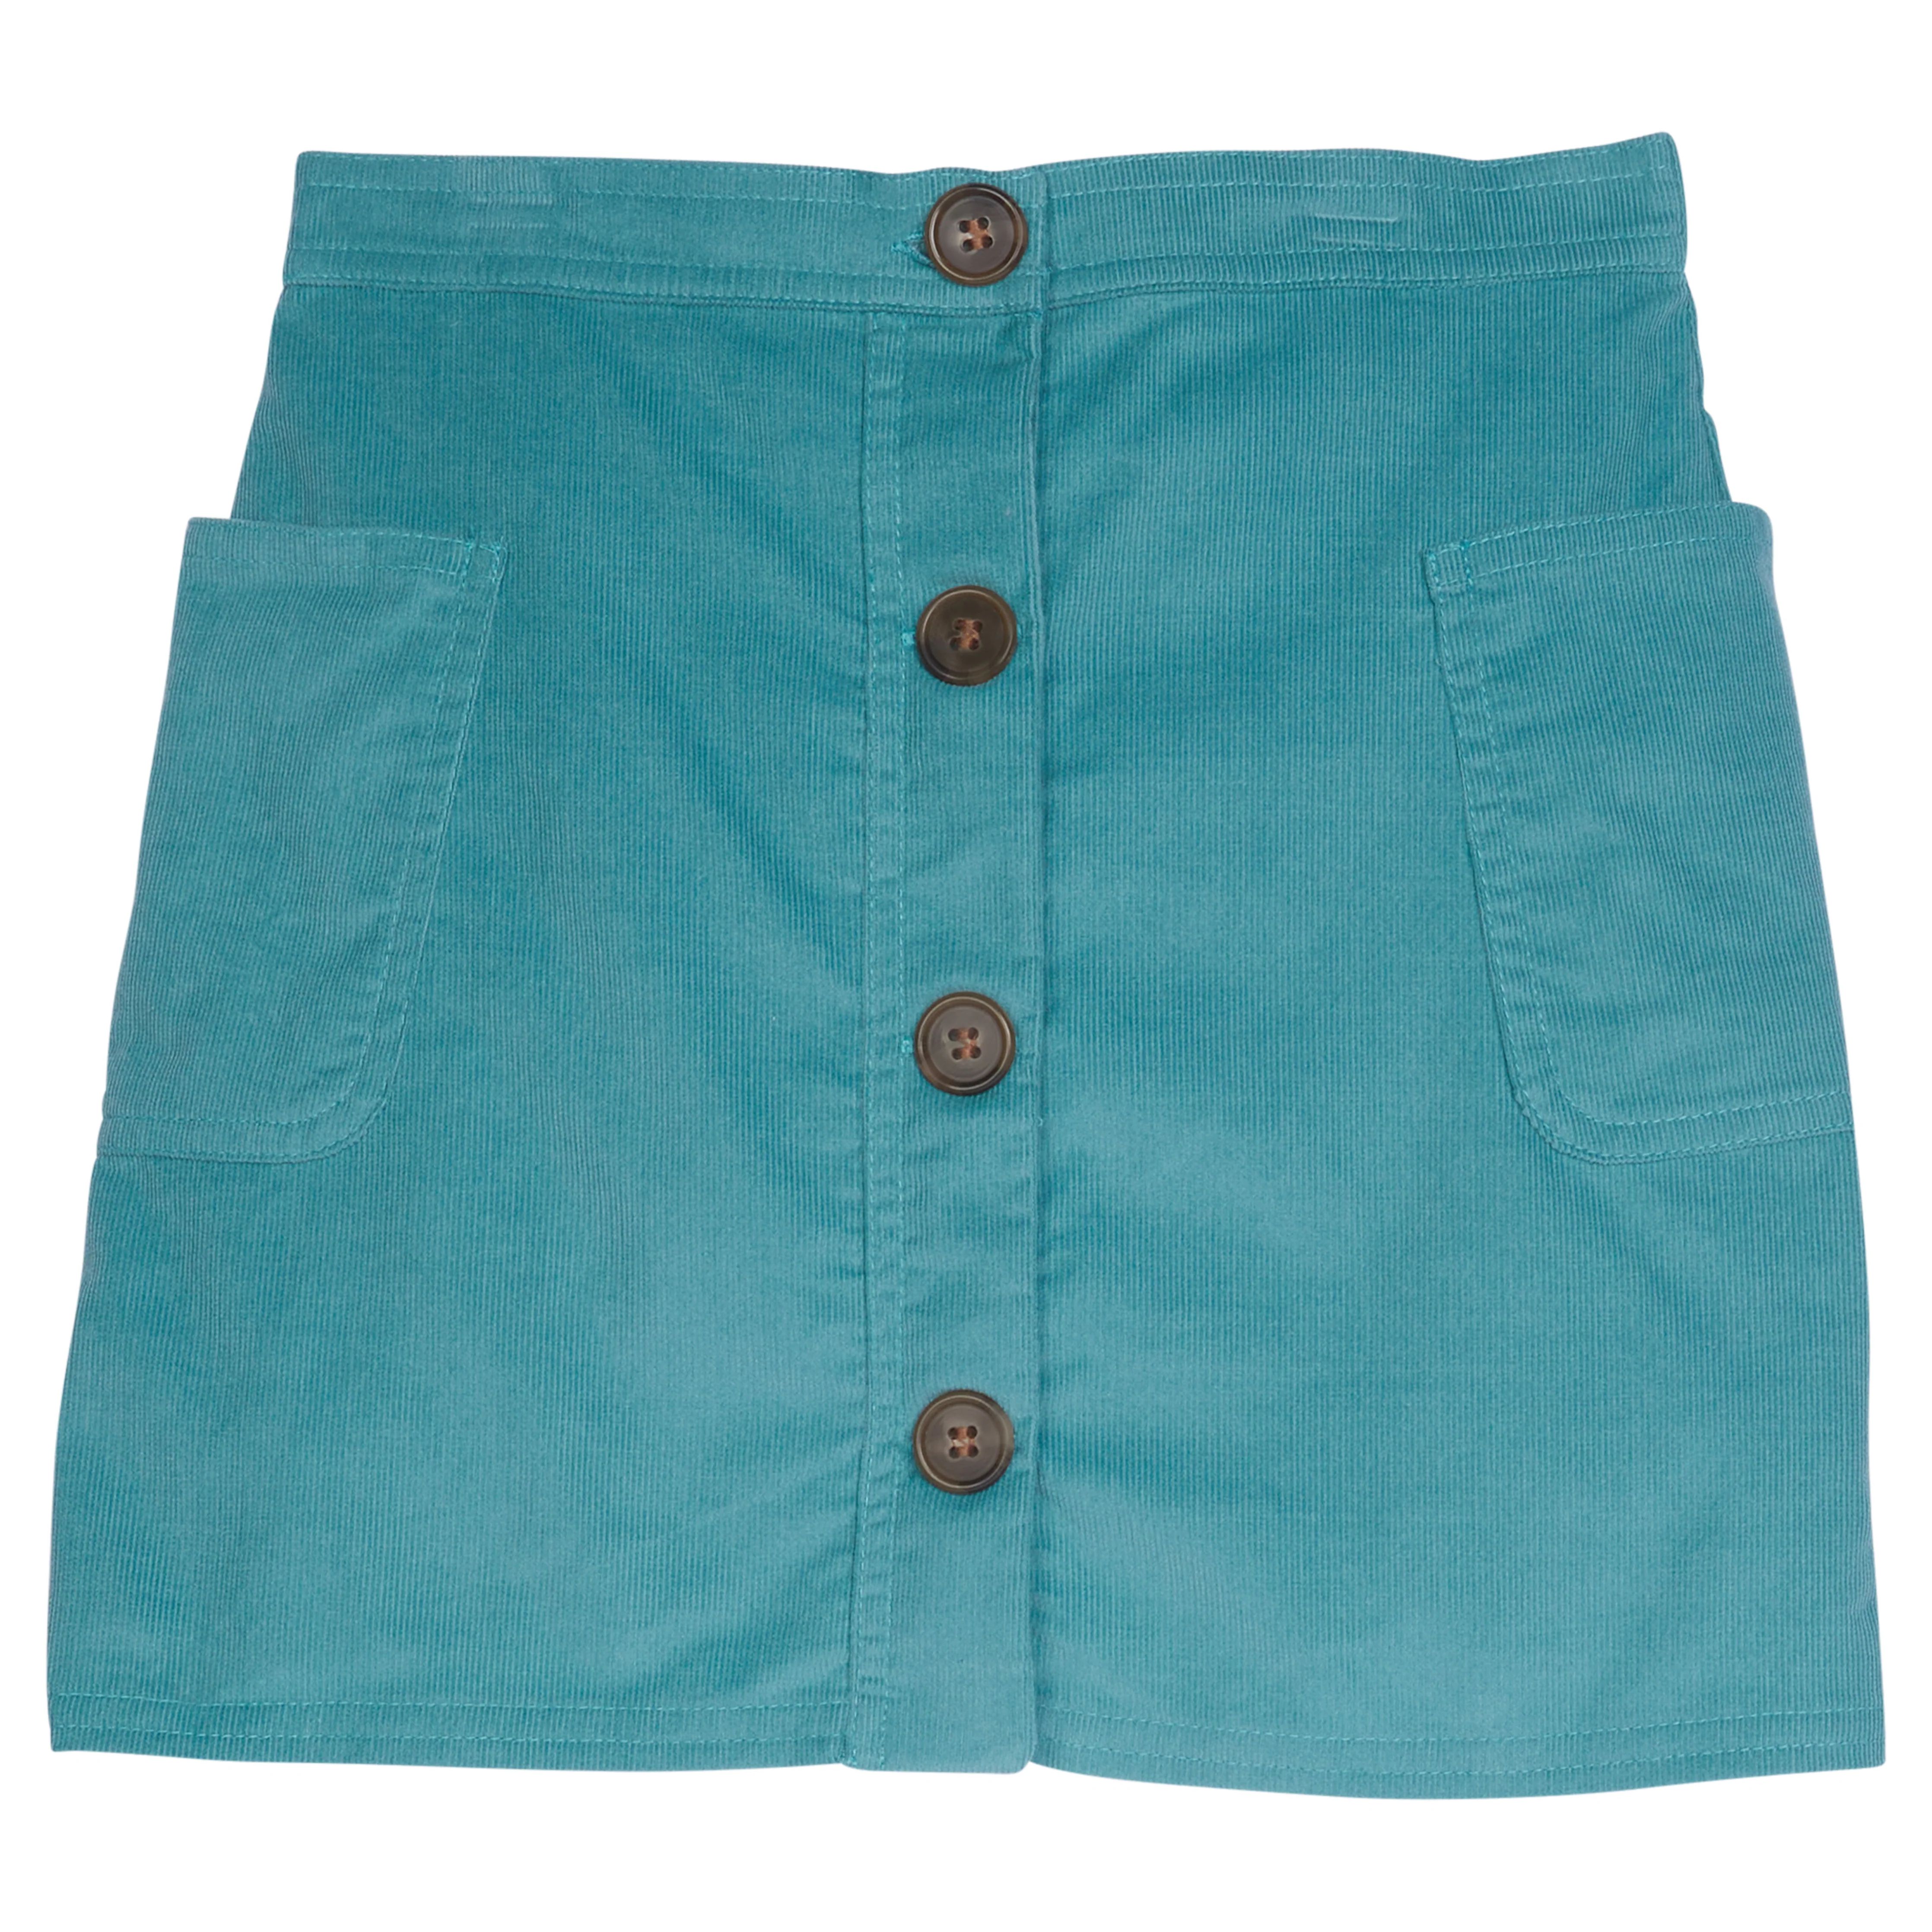 Emily Pocket Skirt - Little Girl's Basic Skirt | Little English